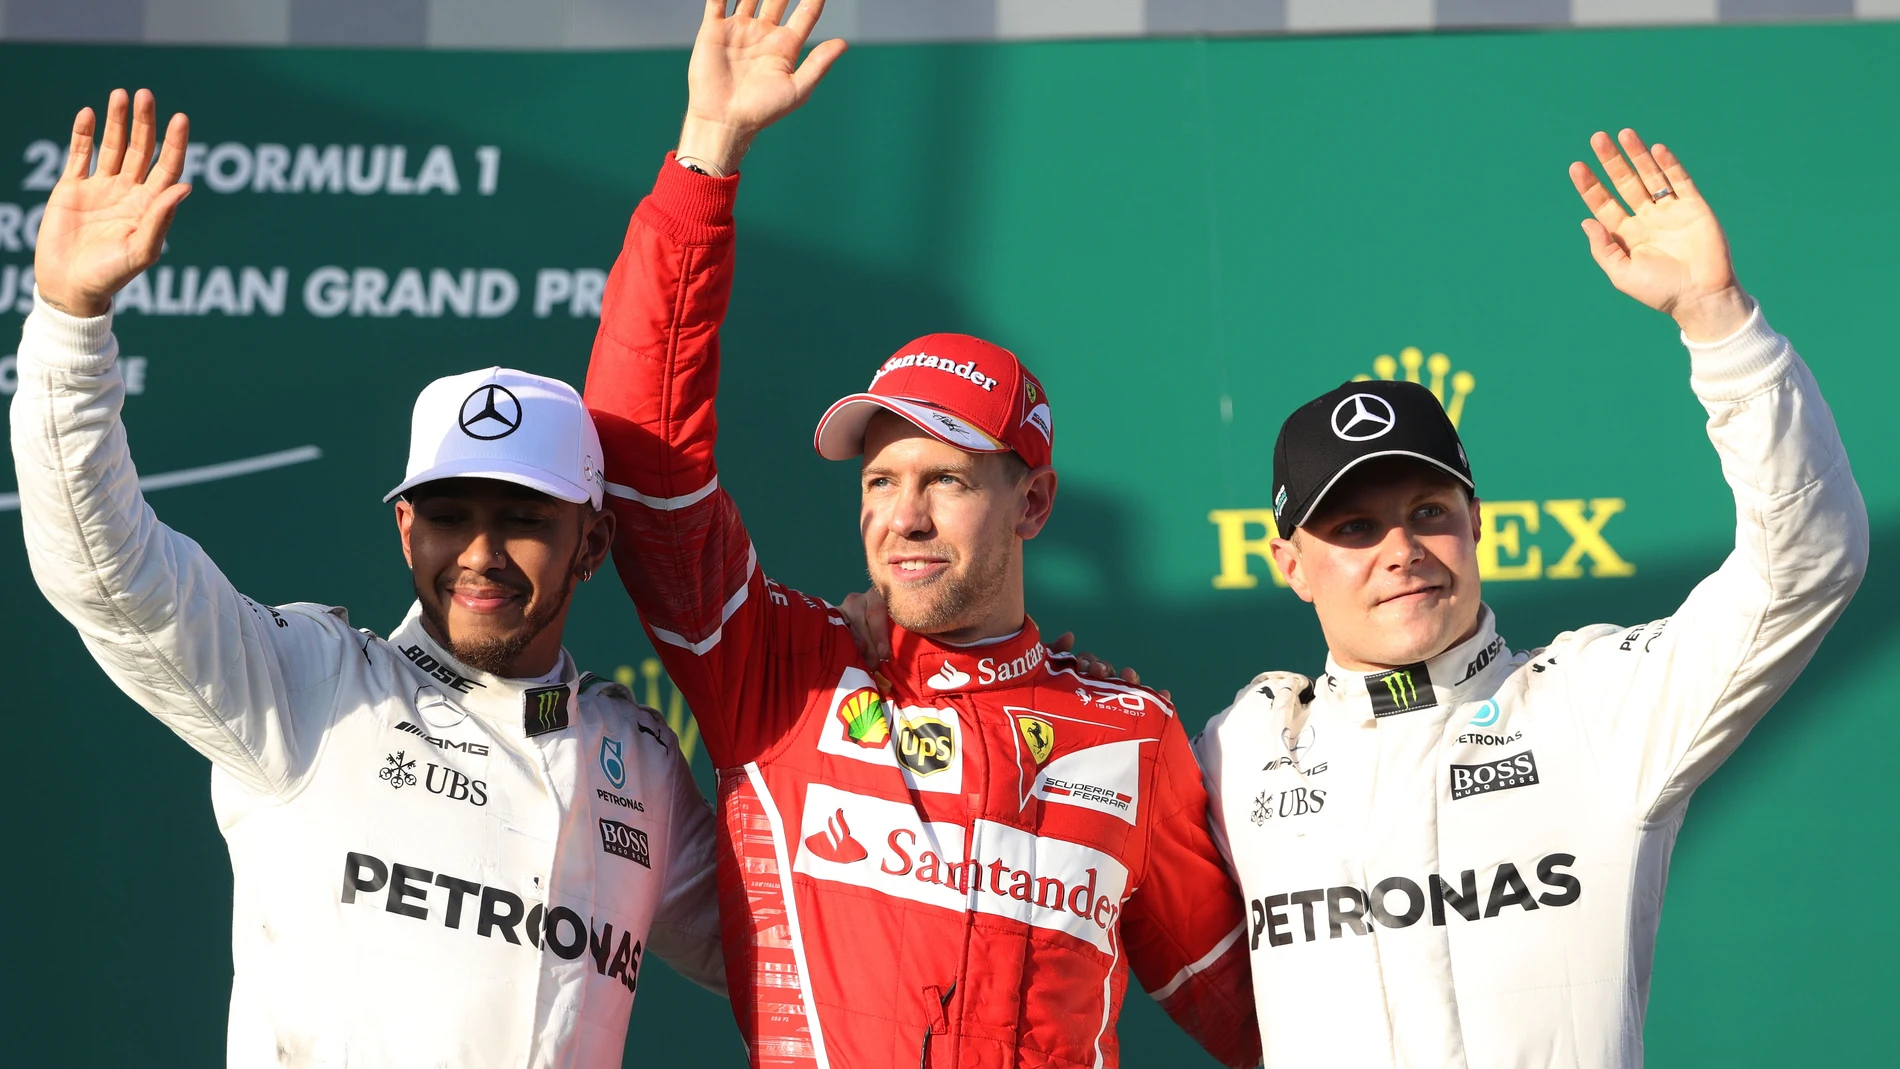 Vettel, junto a Hamilton y Bottas en el podio